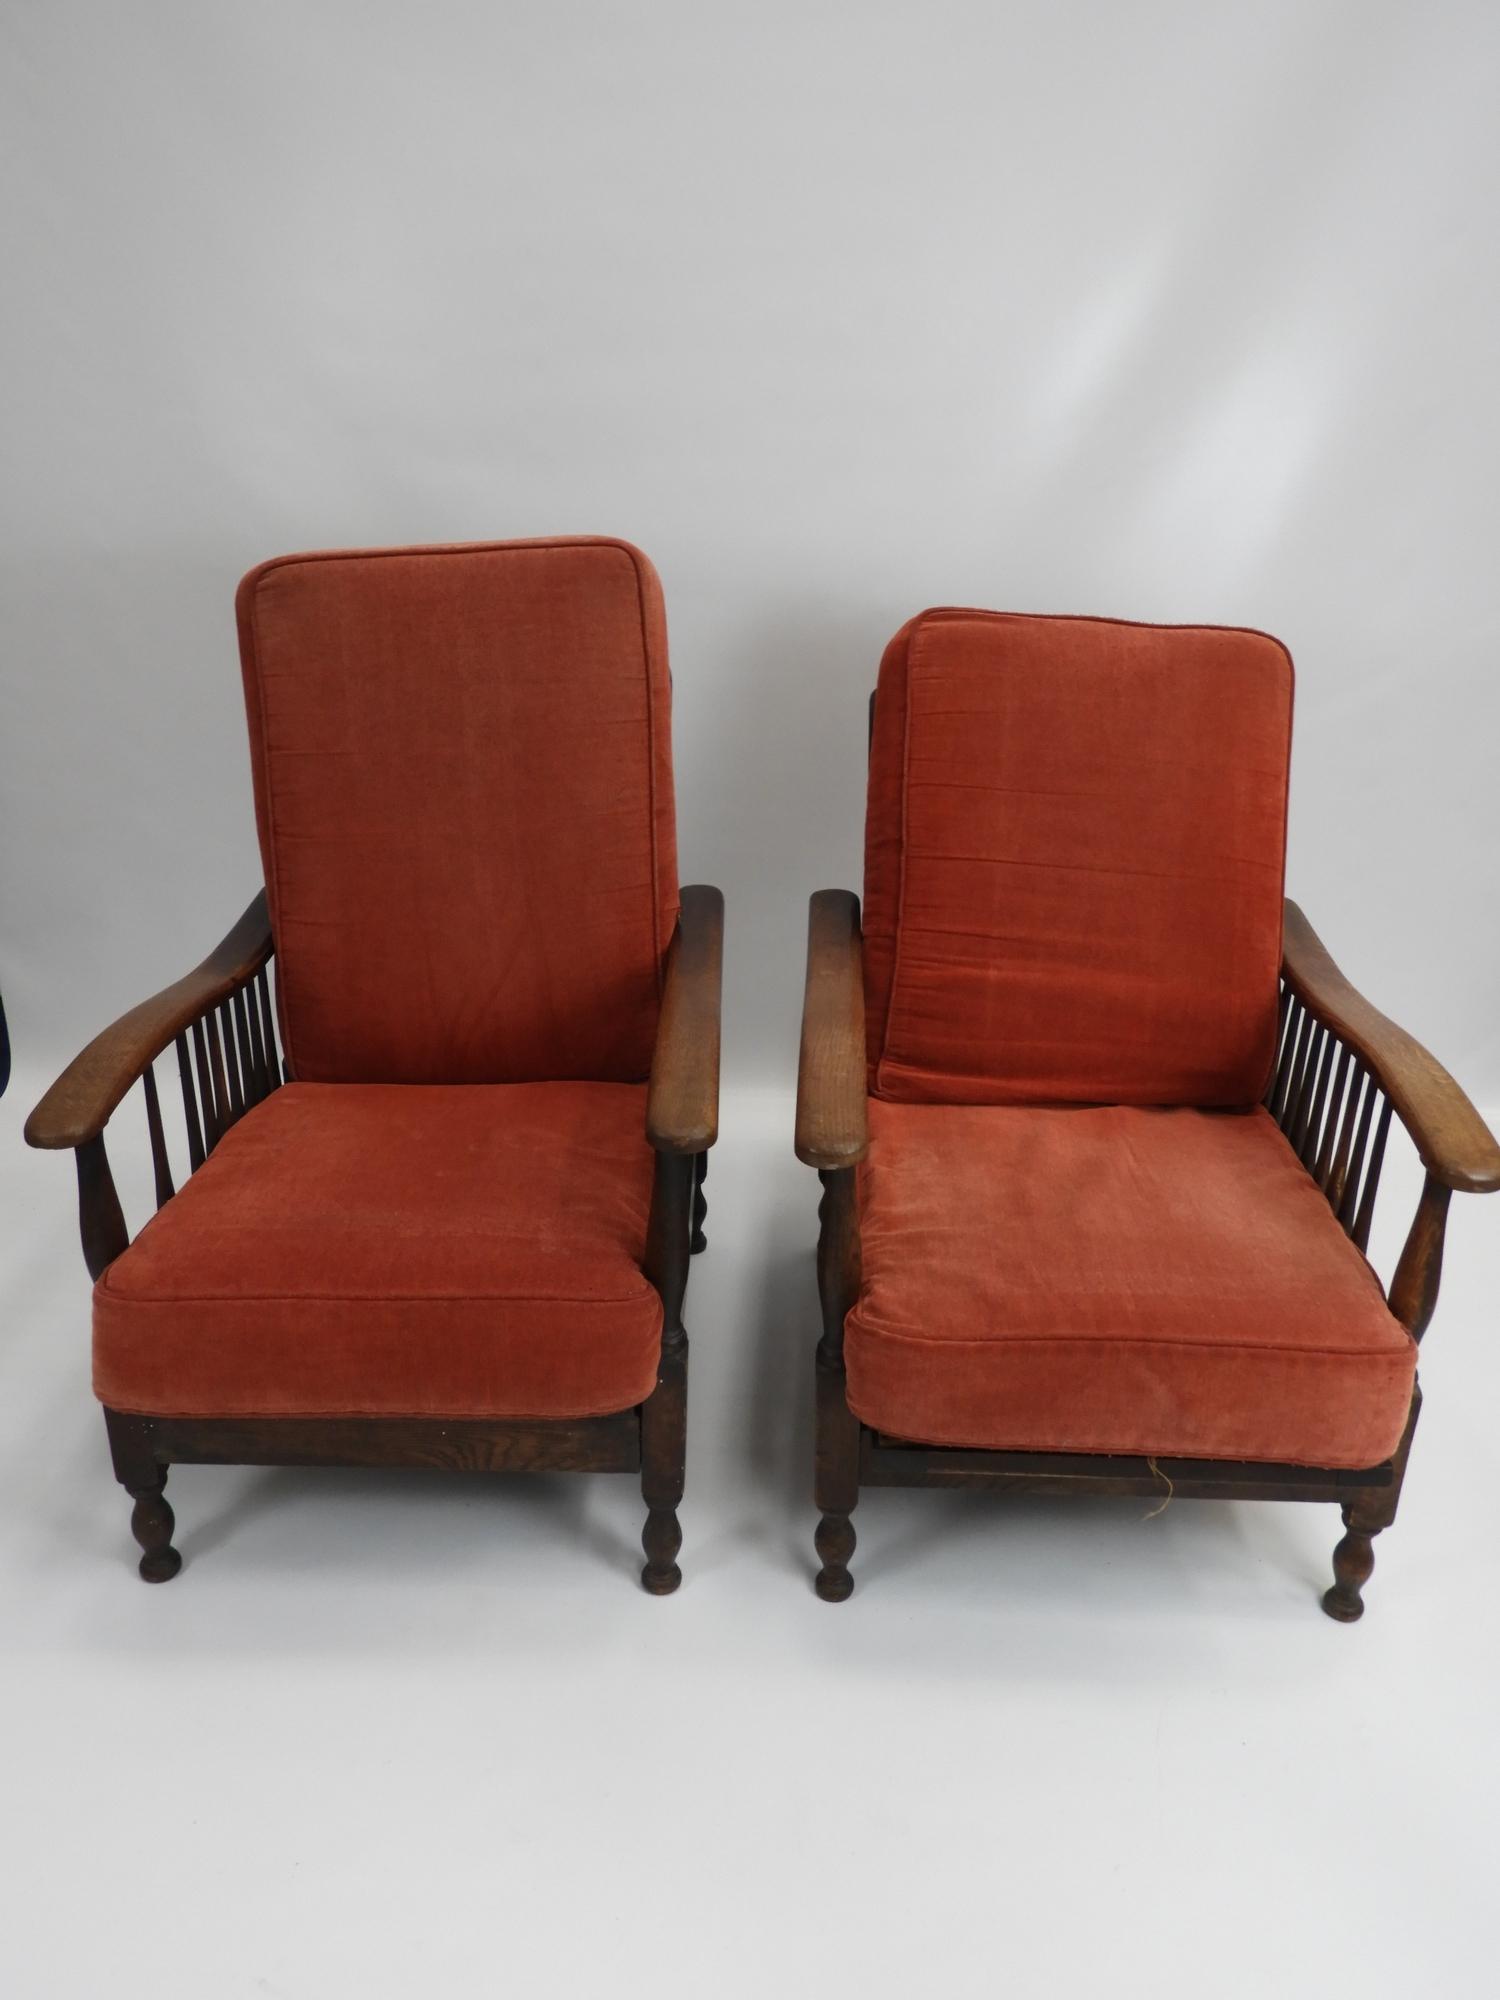 2x Oak Reclining Fireside Chairs